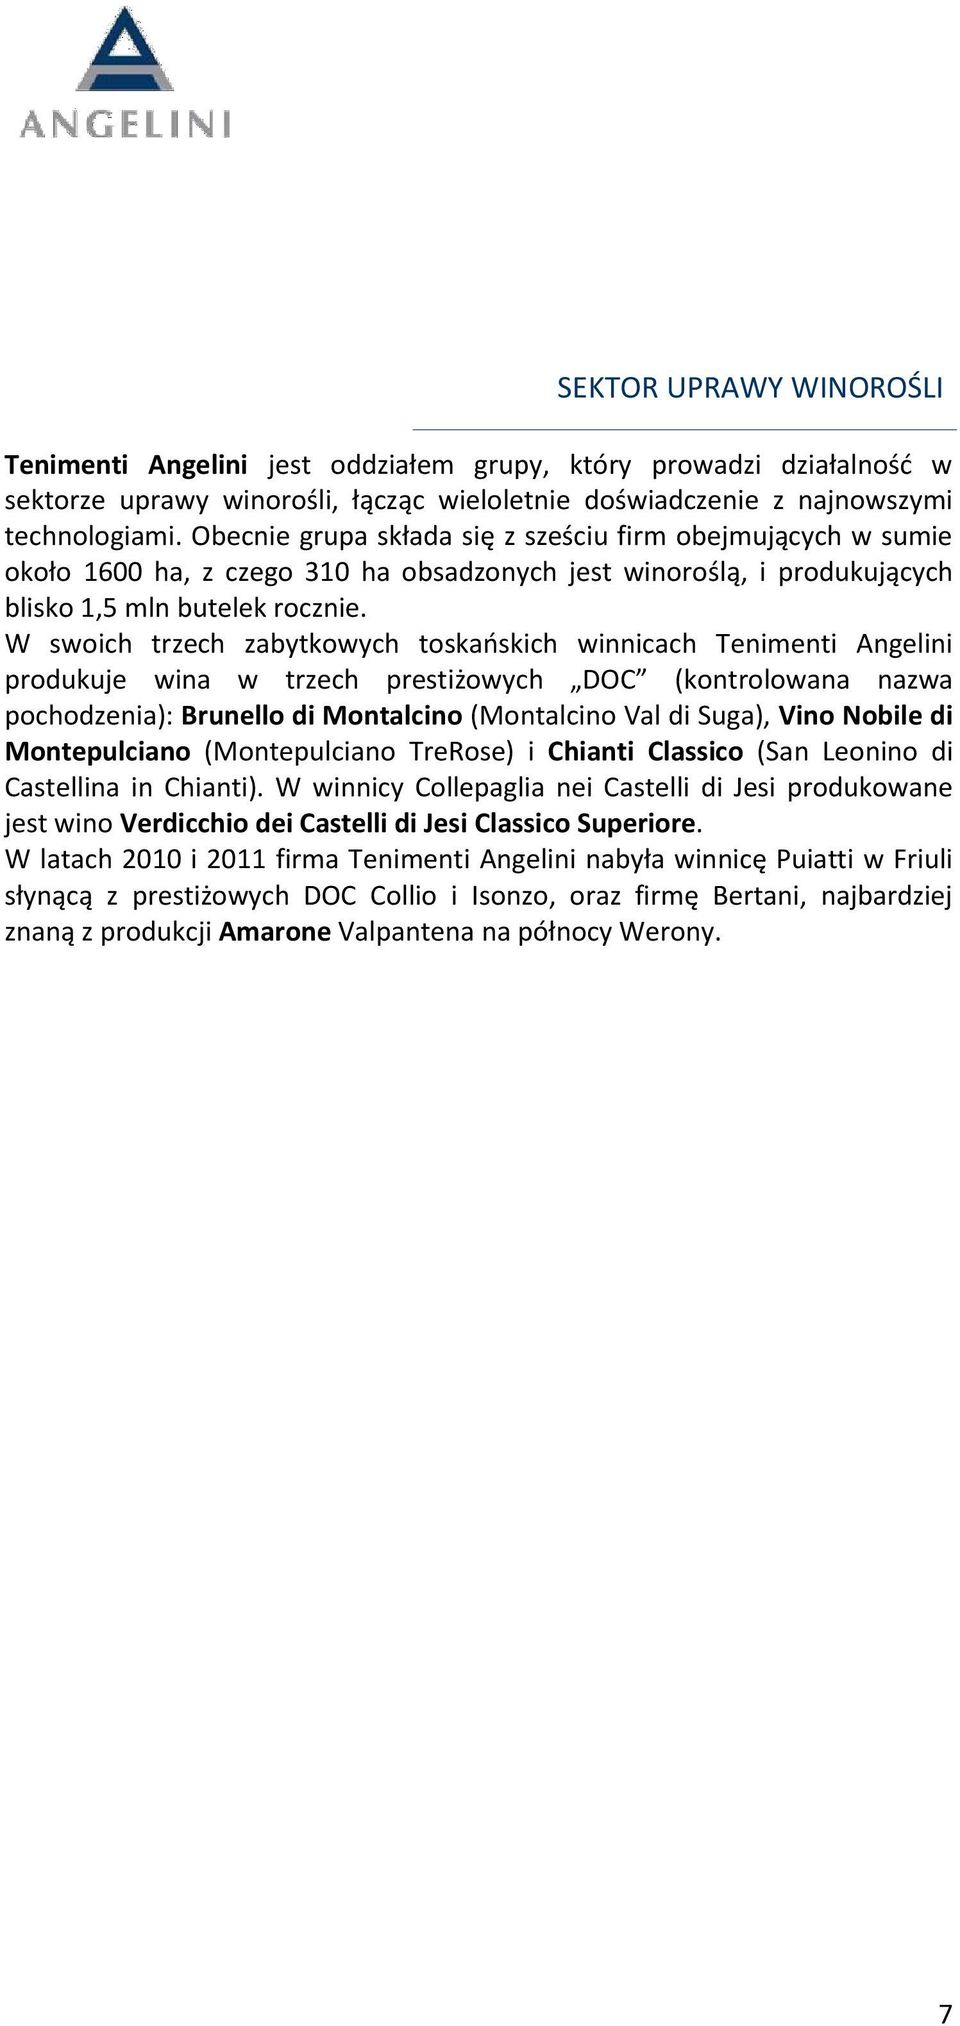 W swoich trzech zabytkowych toskańskich winnicach Tenimenti Angelini produkuje wina w trzech prestiżowych DOC (kontrolowana nazwa pochodzenia): Brunello di Montalcino (Montalcino Val di Suga), Vino